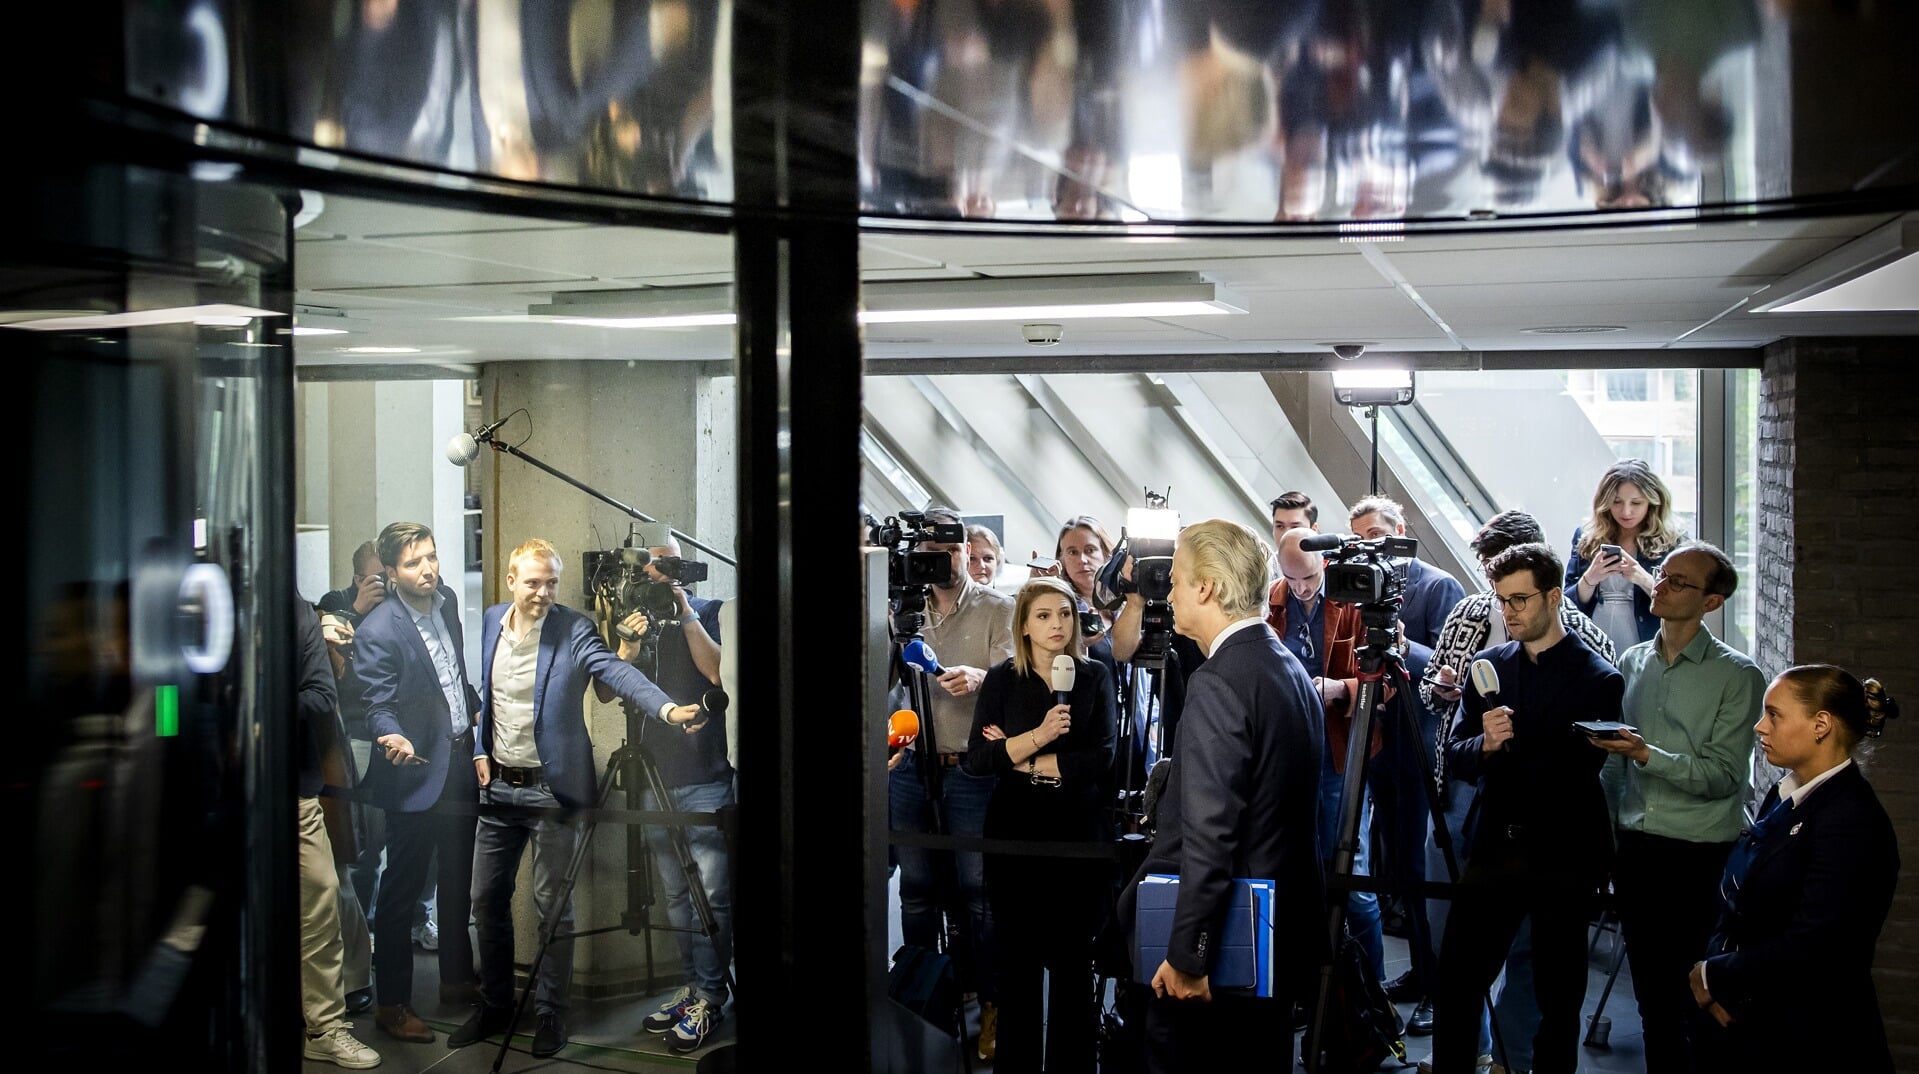 Geert Wilders gaat ervan uit ‘dat dit de laatste keer’ is. Ook hij oogt woensdagochtend opgewekt. 